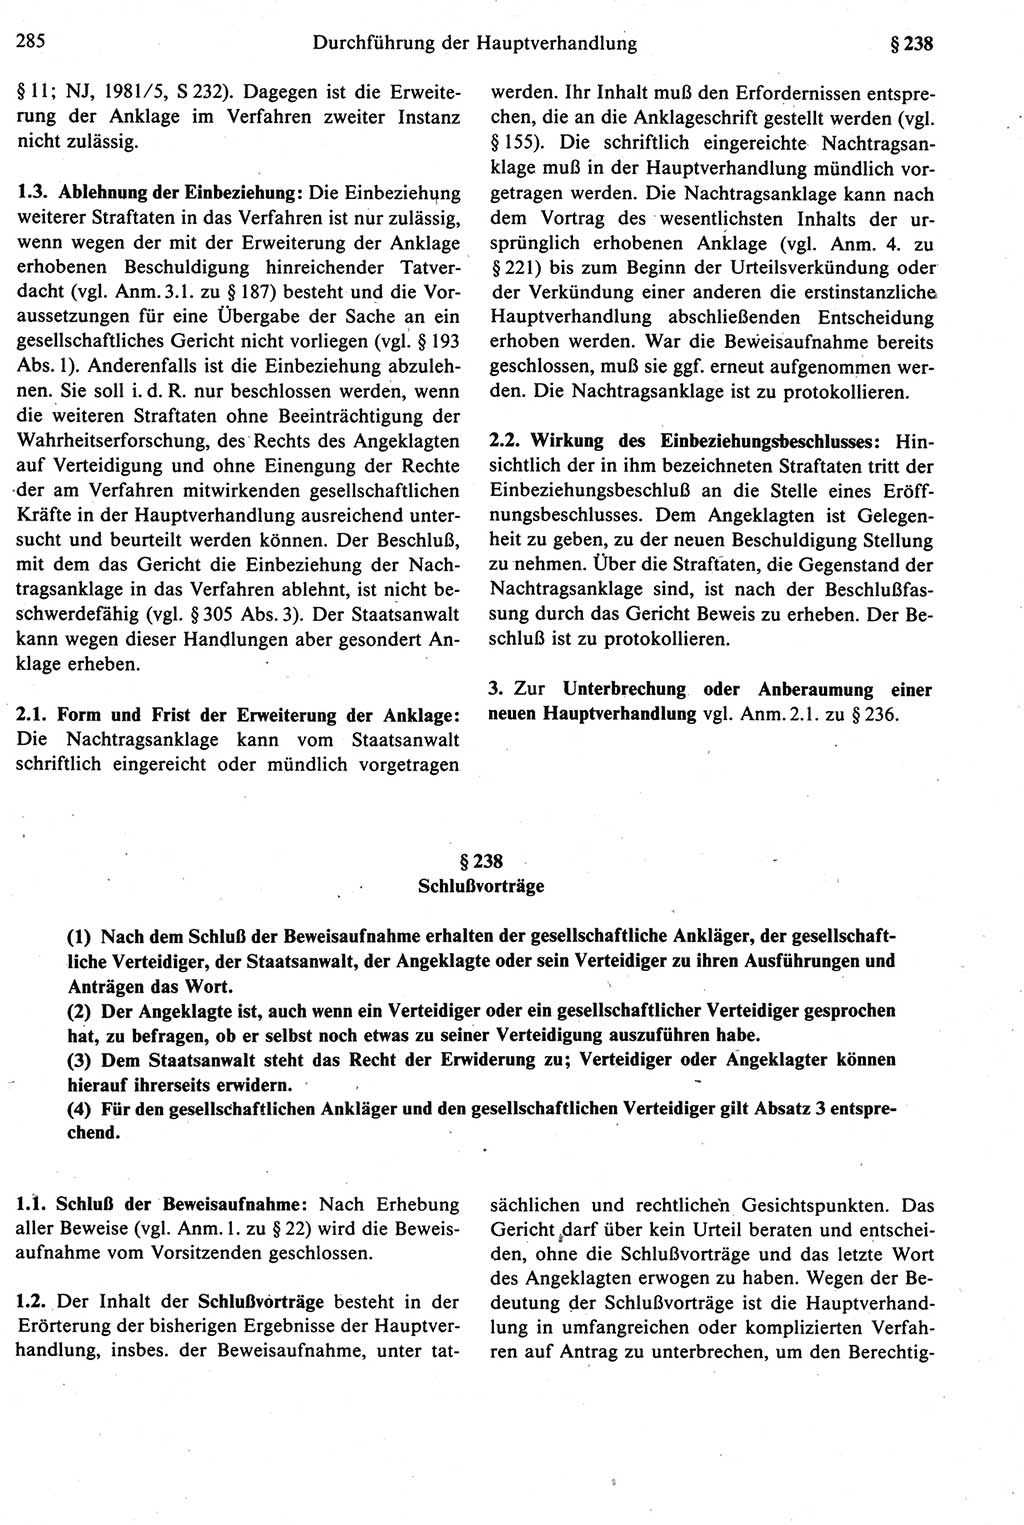 Strafprozeßrecht der DDR [Deutsche Demokratische Republik], Kommentar zur Strafprozeßordnung (StPO) 1987, Seite 285 (Strafprozeßr. DDR Komm. StPO 1987, S. 285)